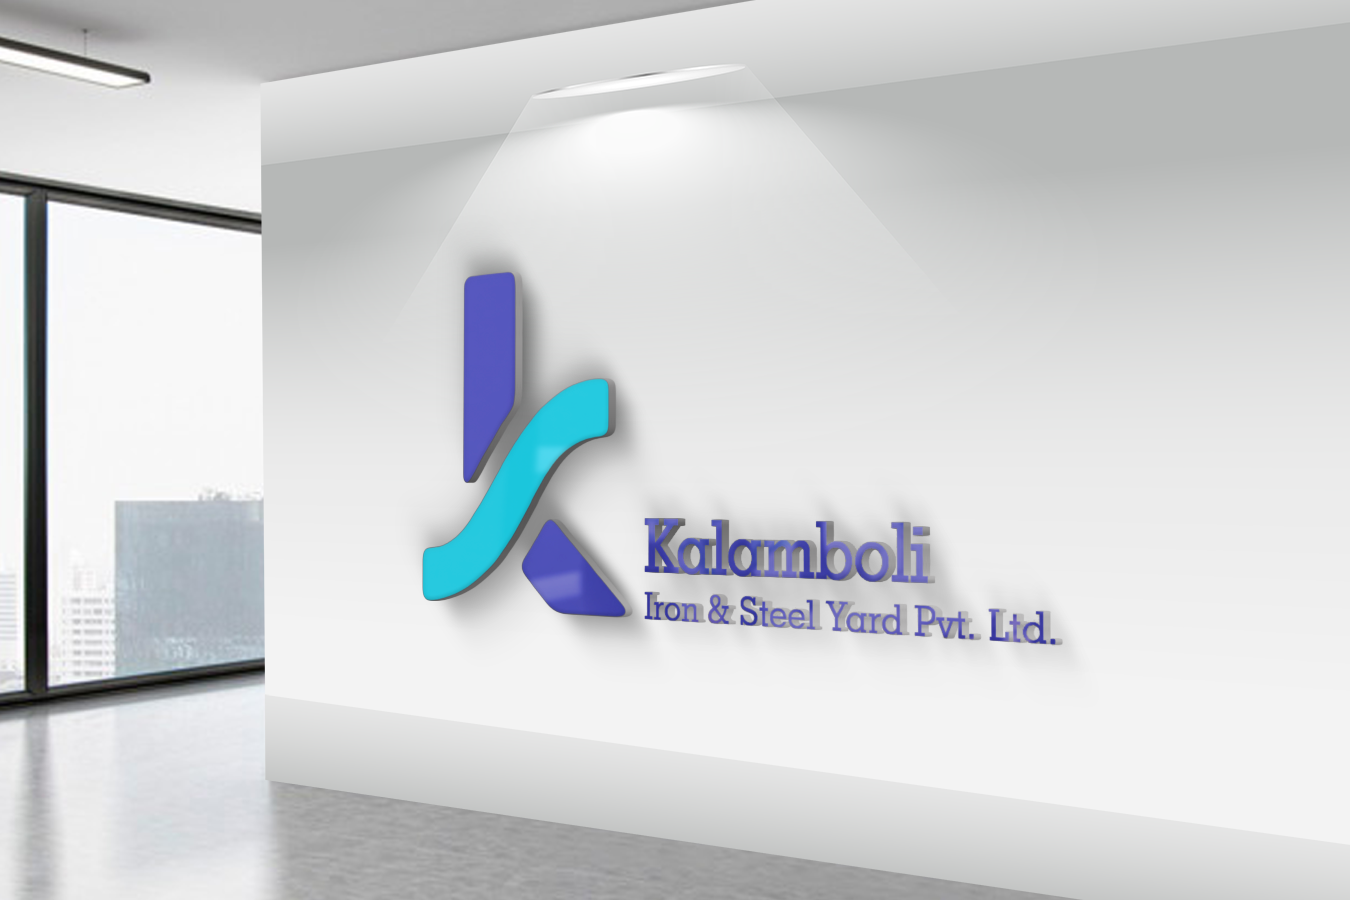 About Kalamboli Steels